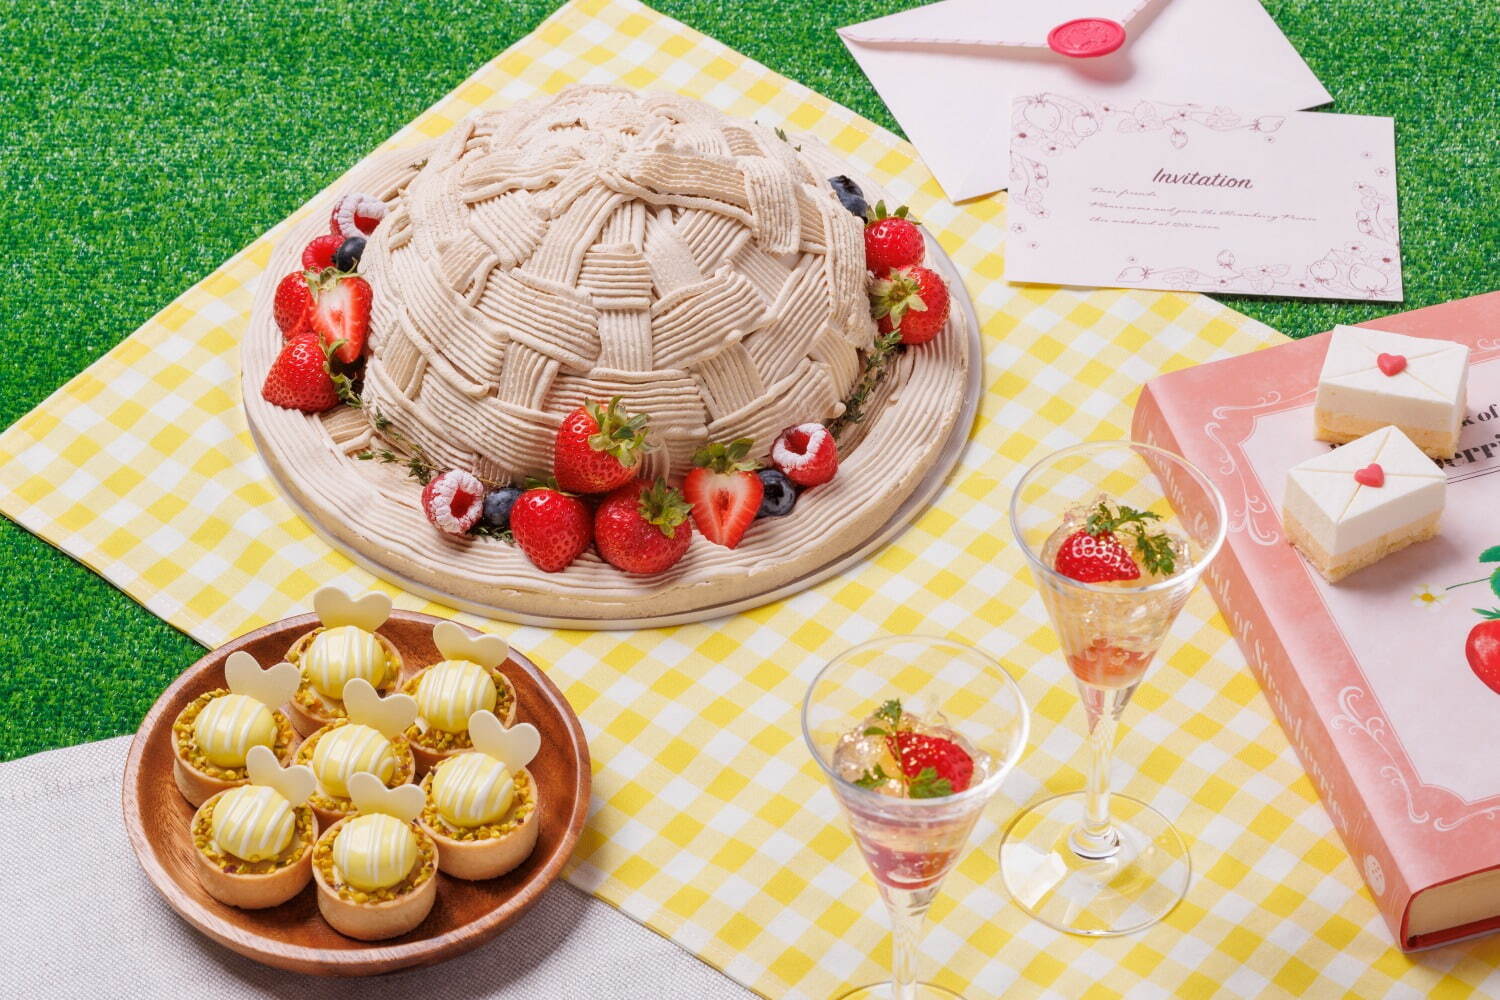 (上)麦わら帽子のストロベリーショートケーキ、(左下)麦わら帽子のストロベリーショートケーキ、(右下)苺とグレープフルーツの白ワインゼリー、(右上)ピクニックの招待状 レターチーズケーキ